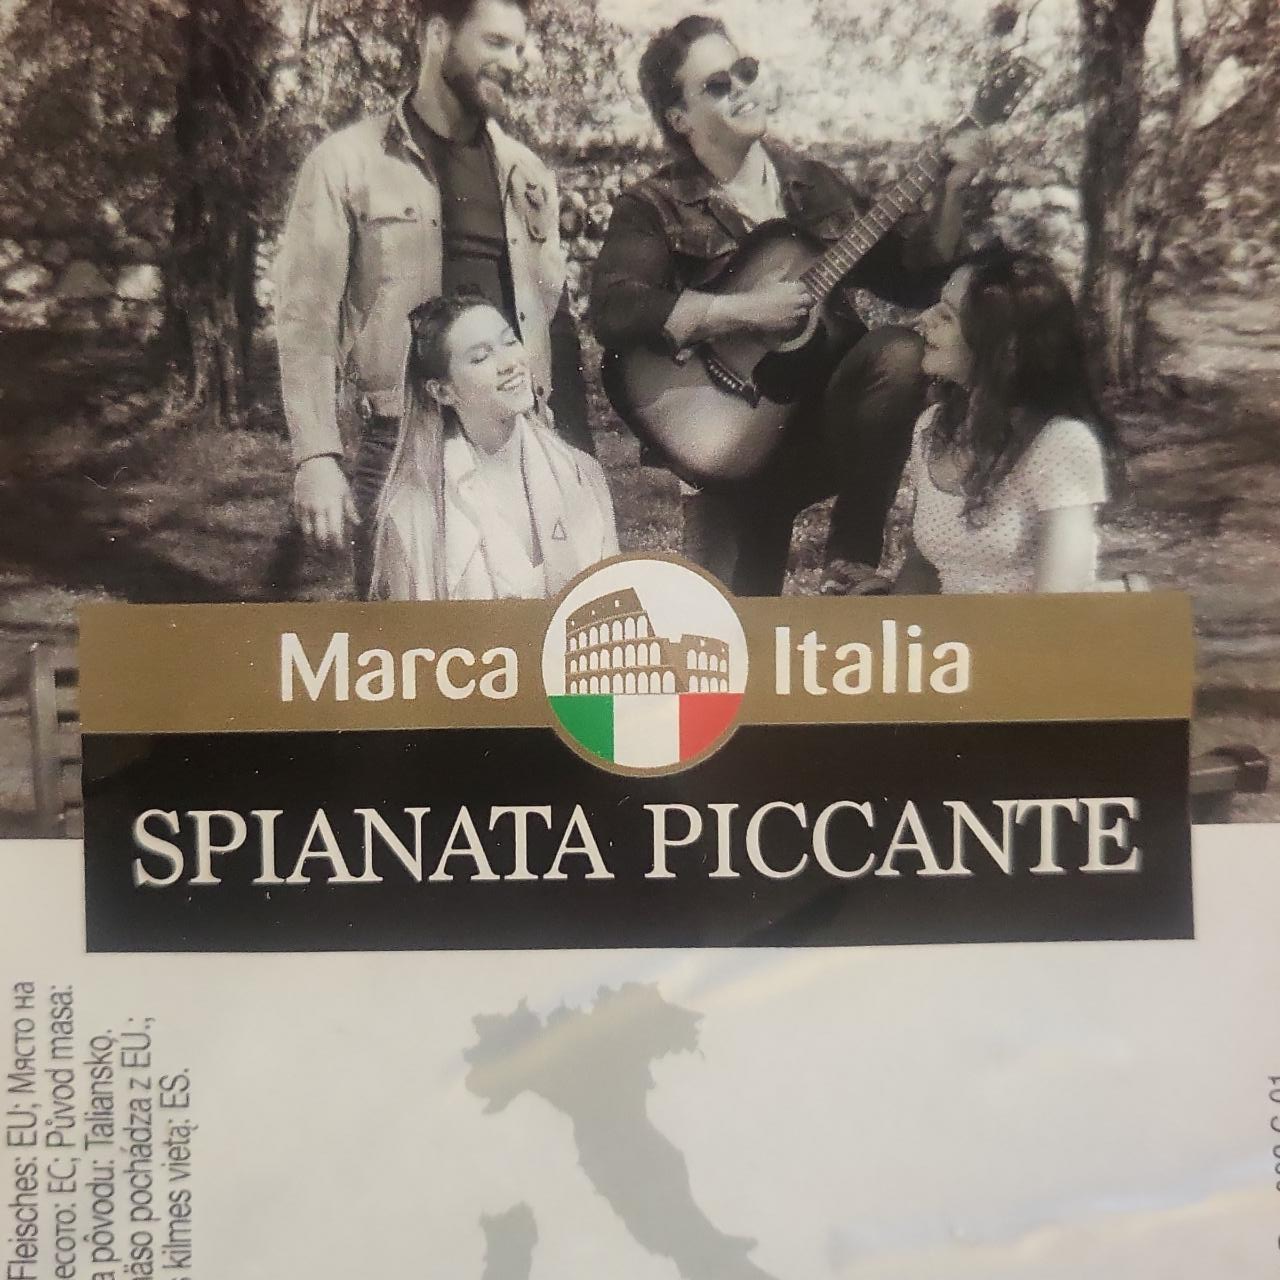 Fotografie - Spianata Piccante Marca Italia